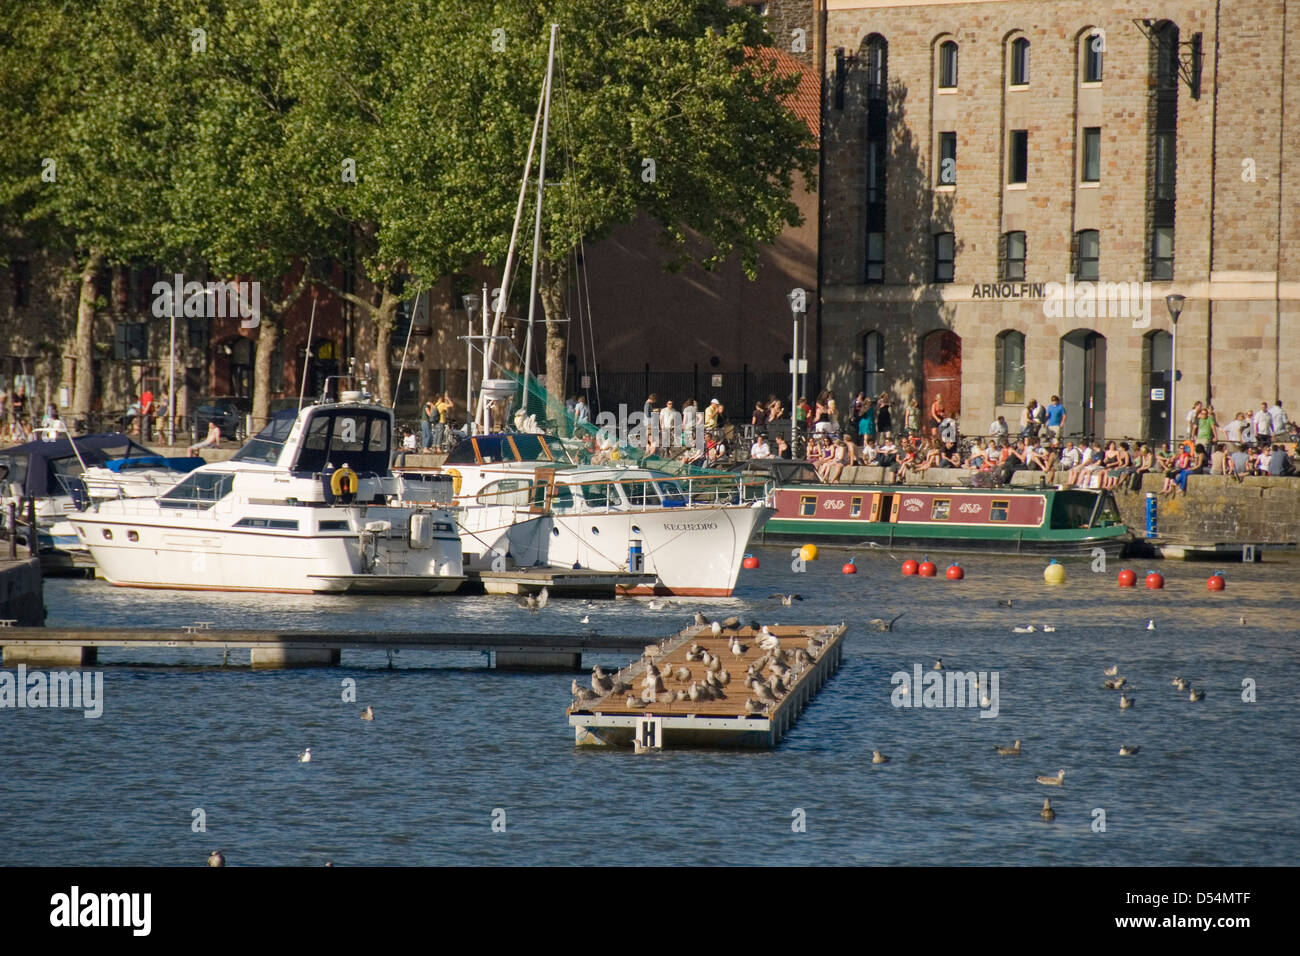 Bristol Harbour, les gens, les bateaux et les oiseaux en face de Arnolfini, Bristol, England, UK Banque D'Images